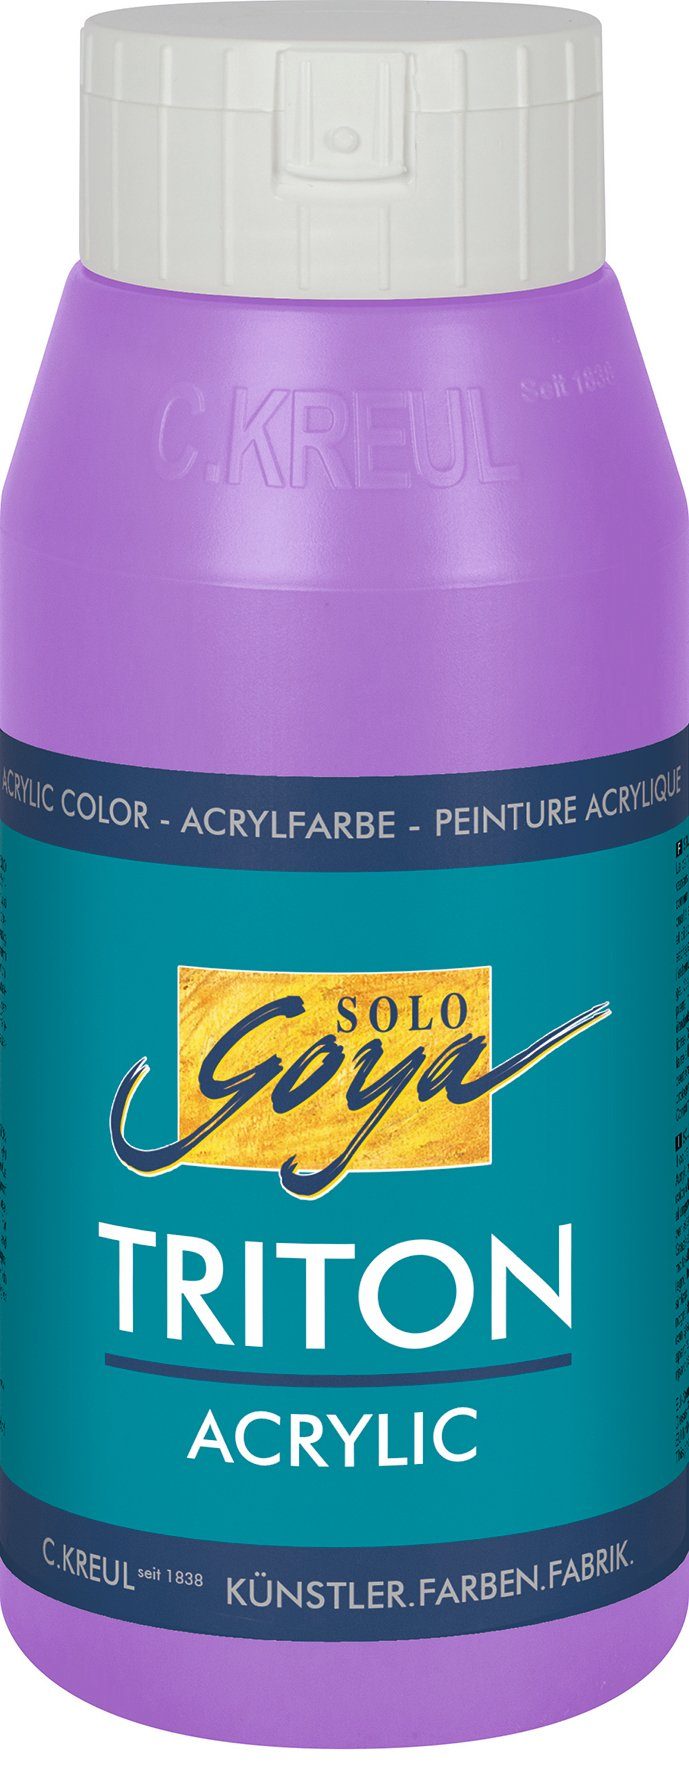 Flieder ml Solo 750 Triton Acrylic, Kreul Goya Acrylfarbe